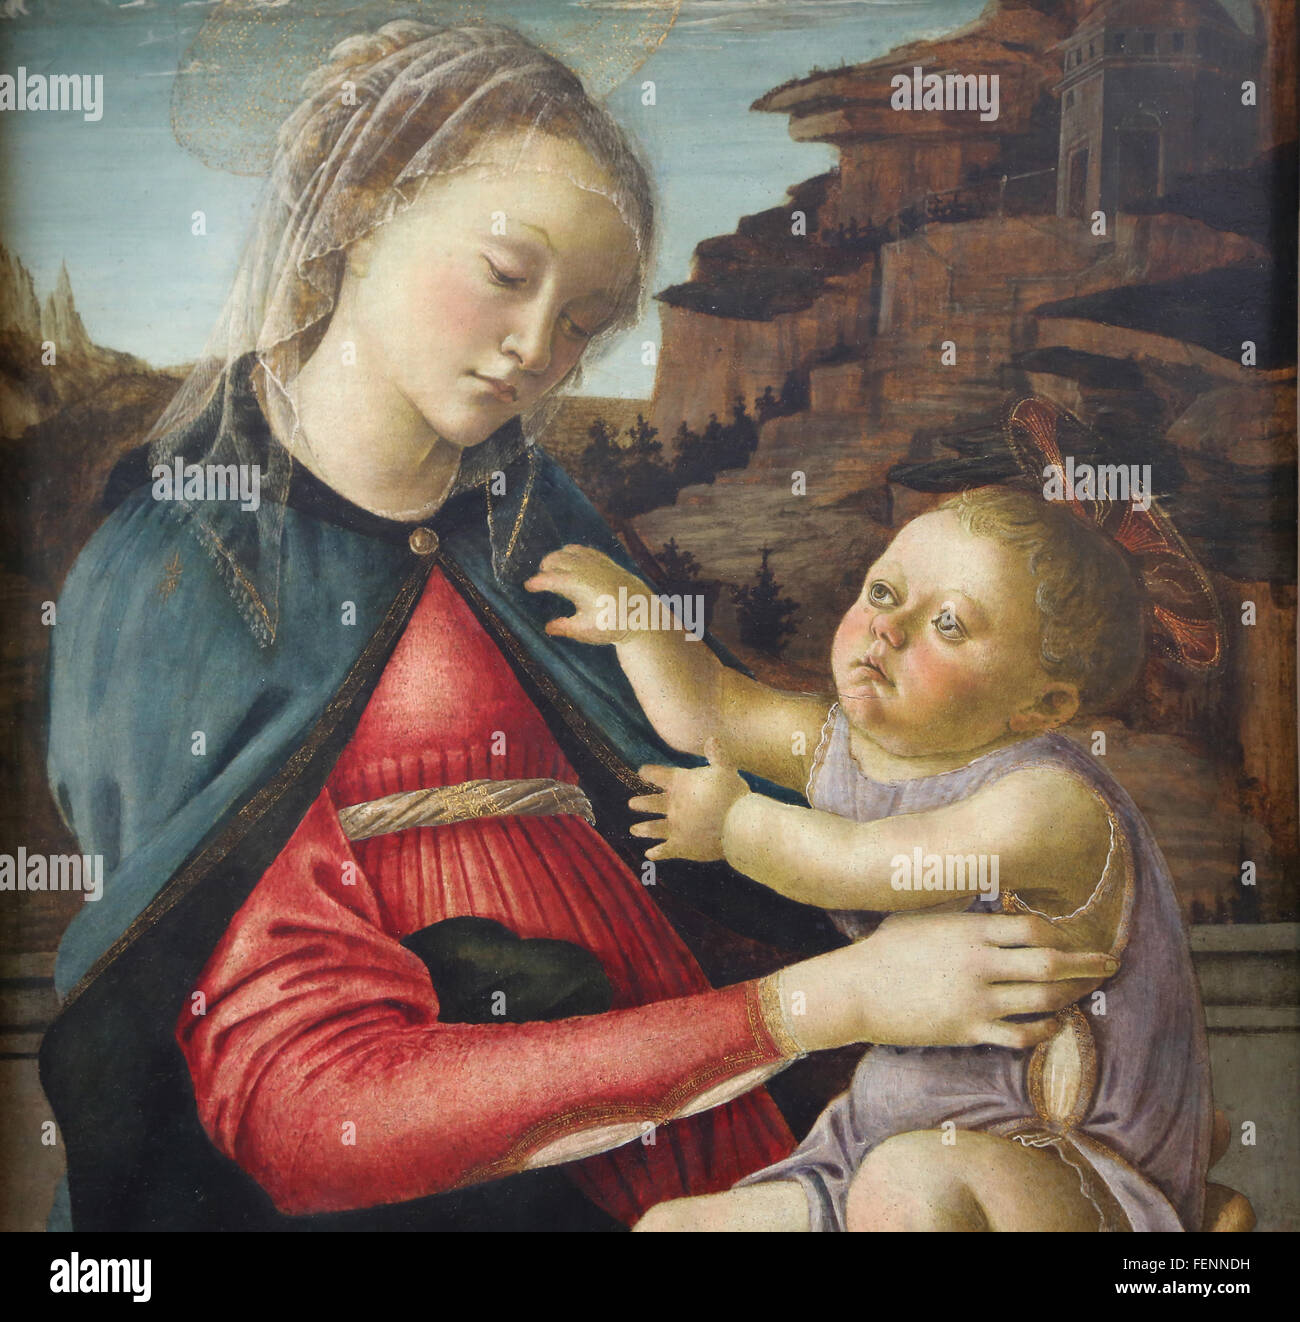 Vierge et l'enfant, 1465-1470. Tempera sur panneau. Par Sandro Botticelli (1445-1510). Peintre italien. Renaissance. Musée du Louvre. Banque D'Images